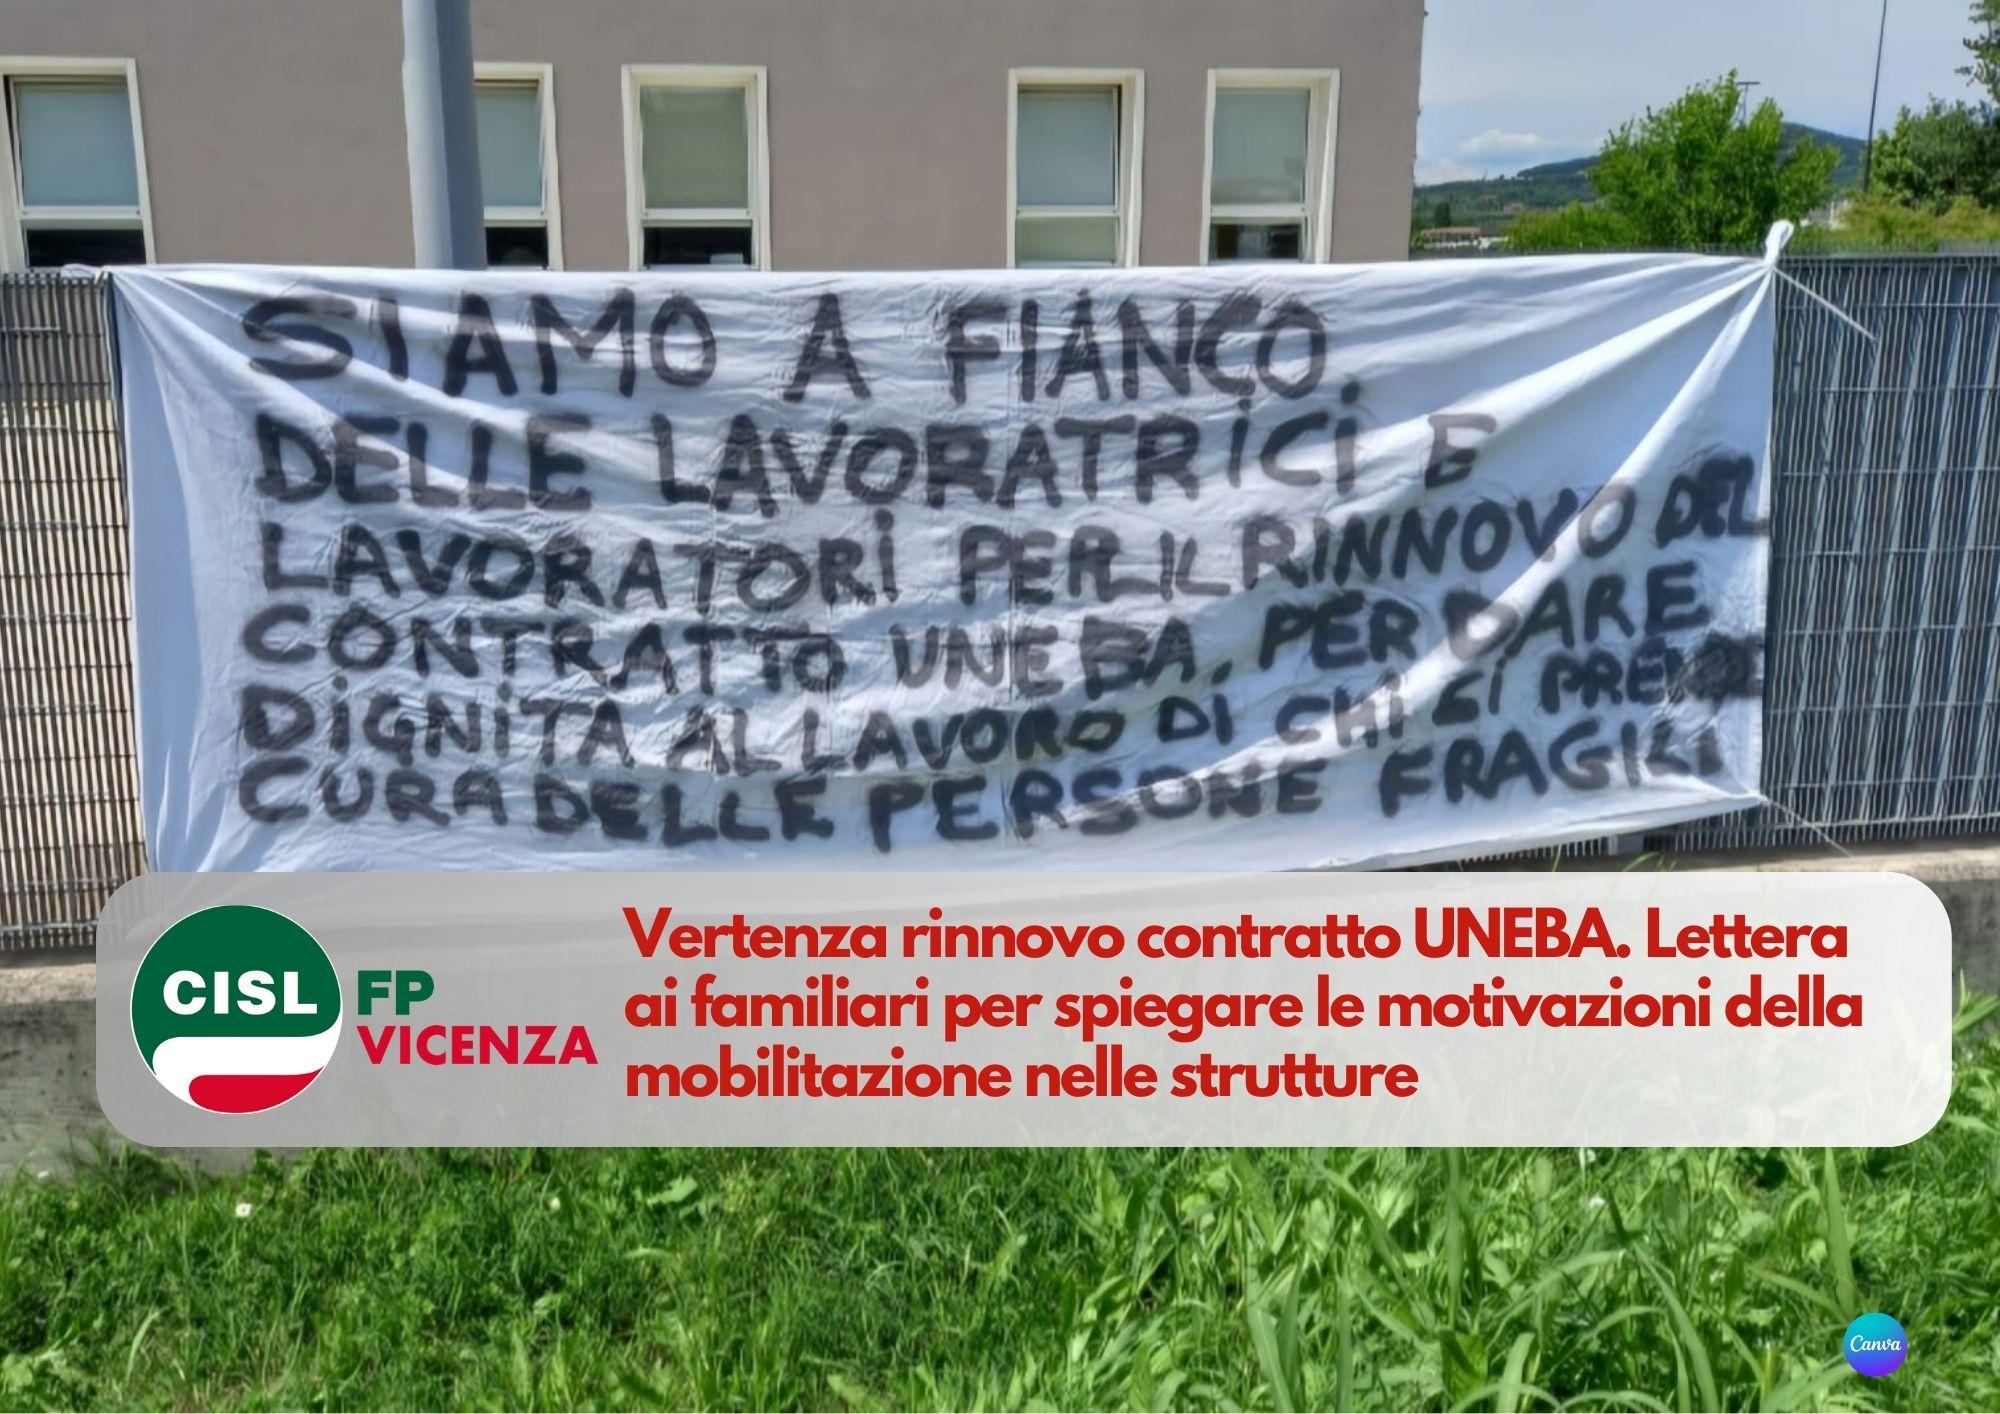 CISL FP Vicenza. Lettera ai familiari per spiegare le motivazioni della mobilitazione strutture UNEBA